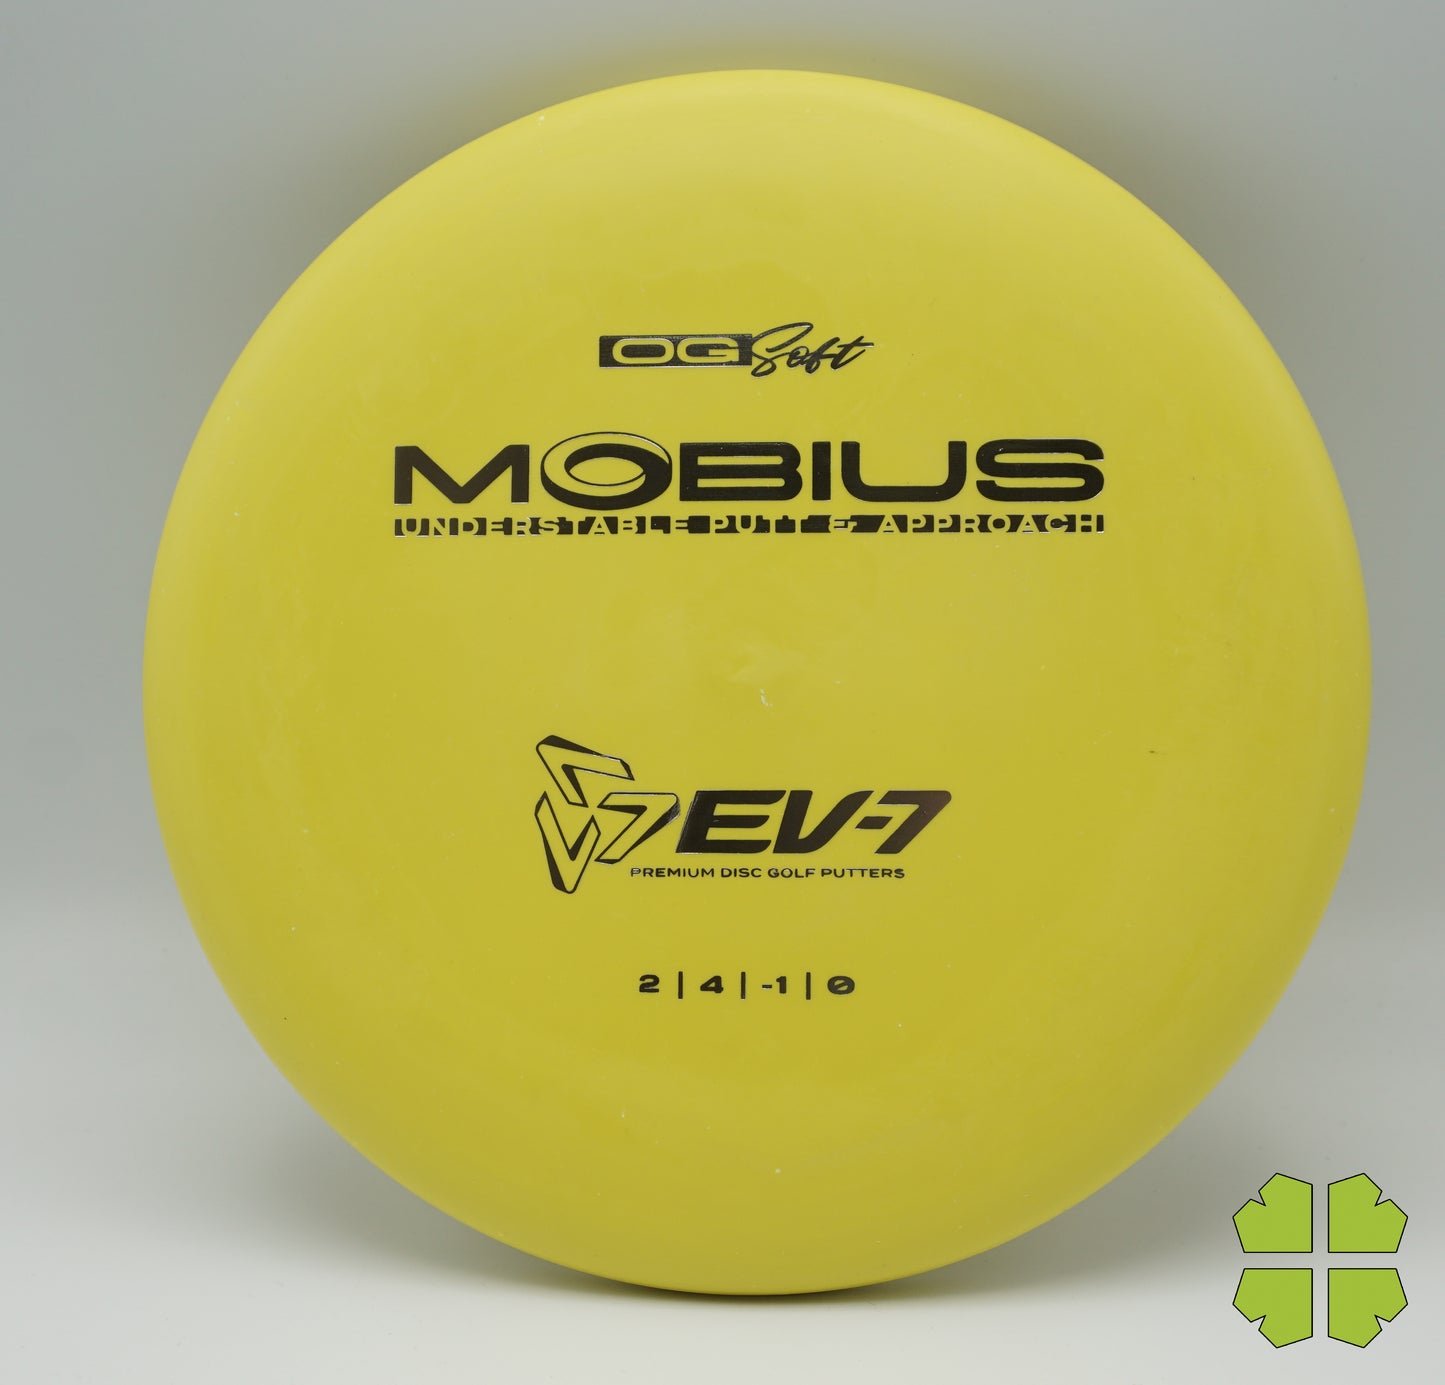 EV-7 Mobius OG Soft 172g